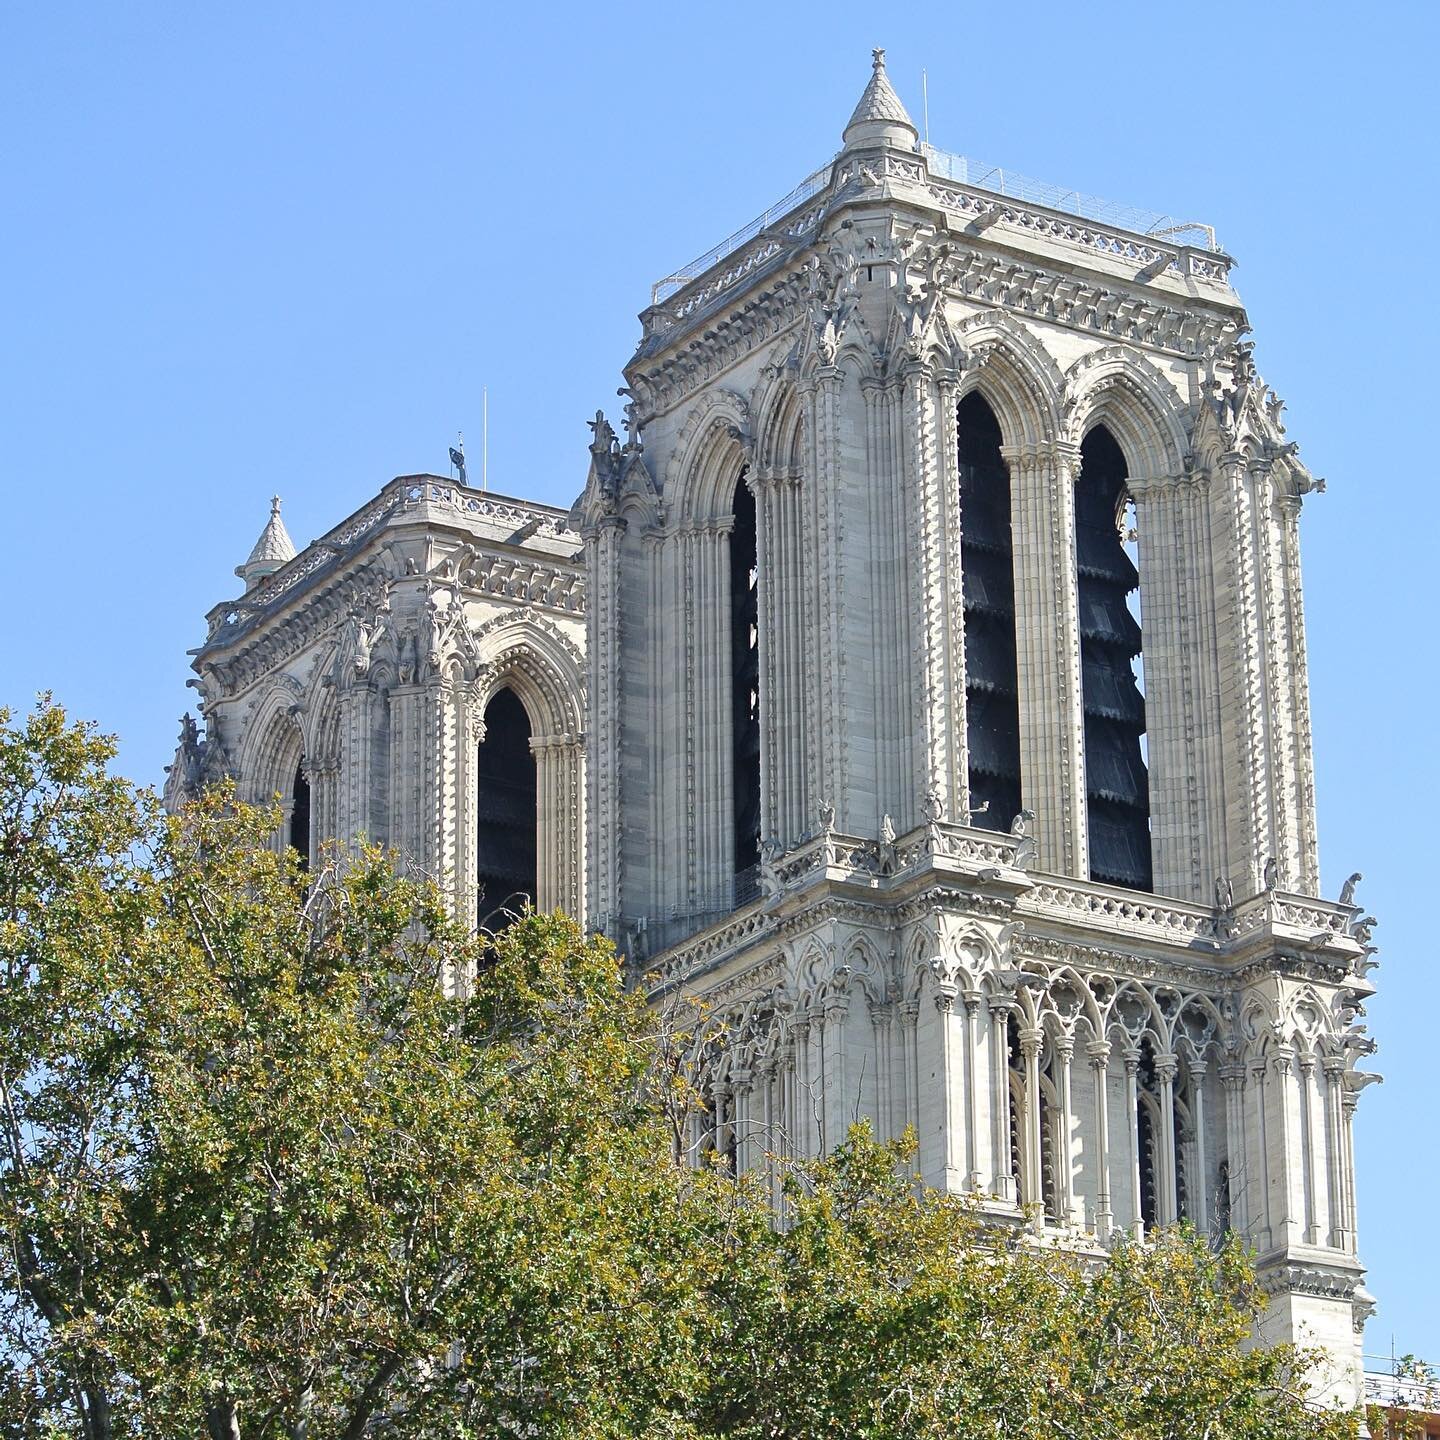 Cathedrale-Notre-Dame-de-Paris-Restoration-Parisology.jpg